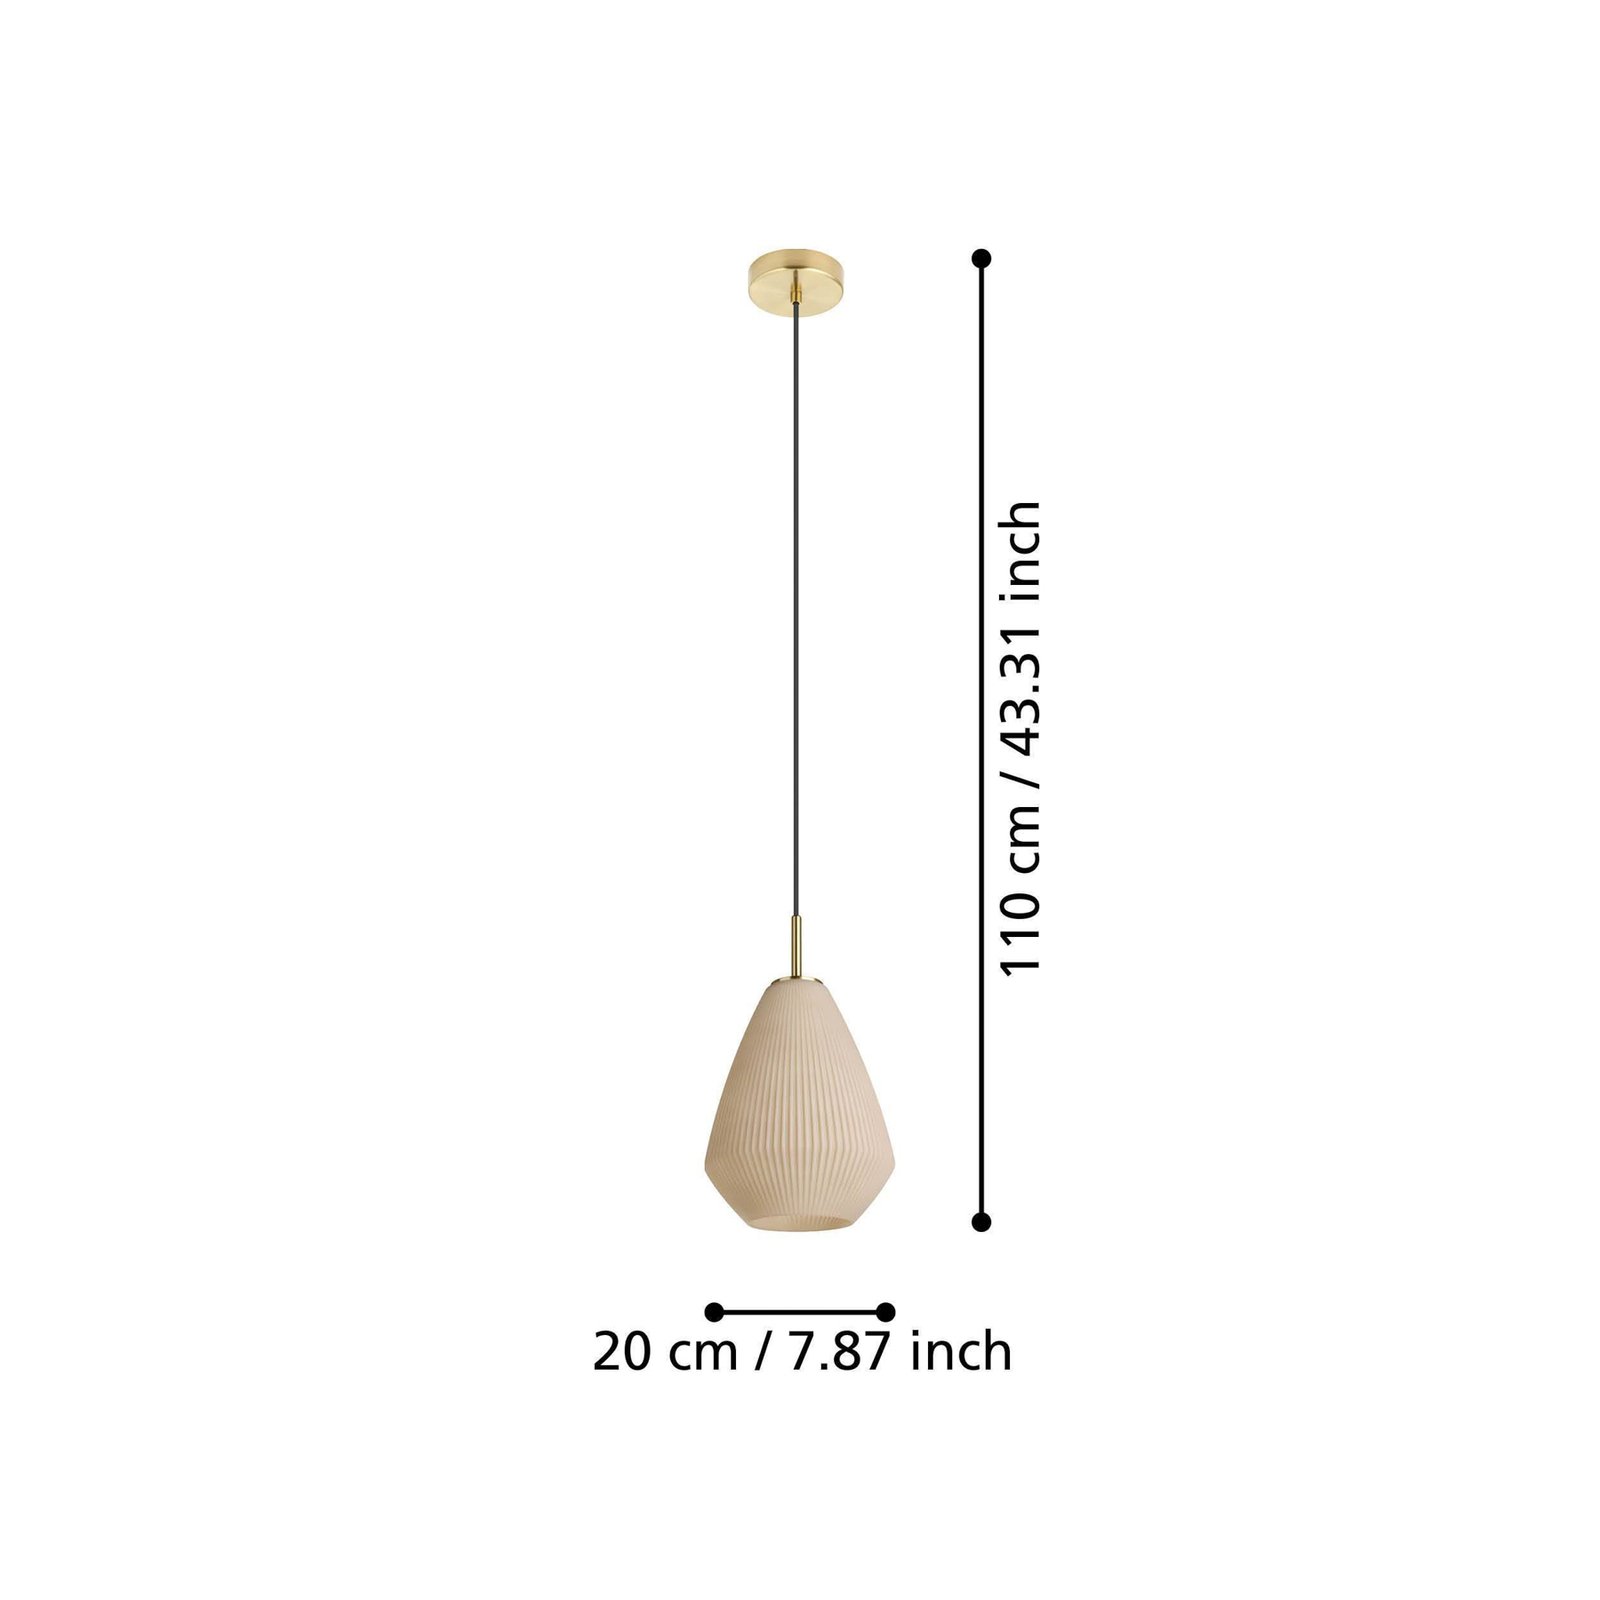 Závěsná lampa Caprarola, Ø 20 cm, písková barva, sklo/kov